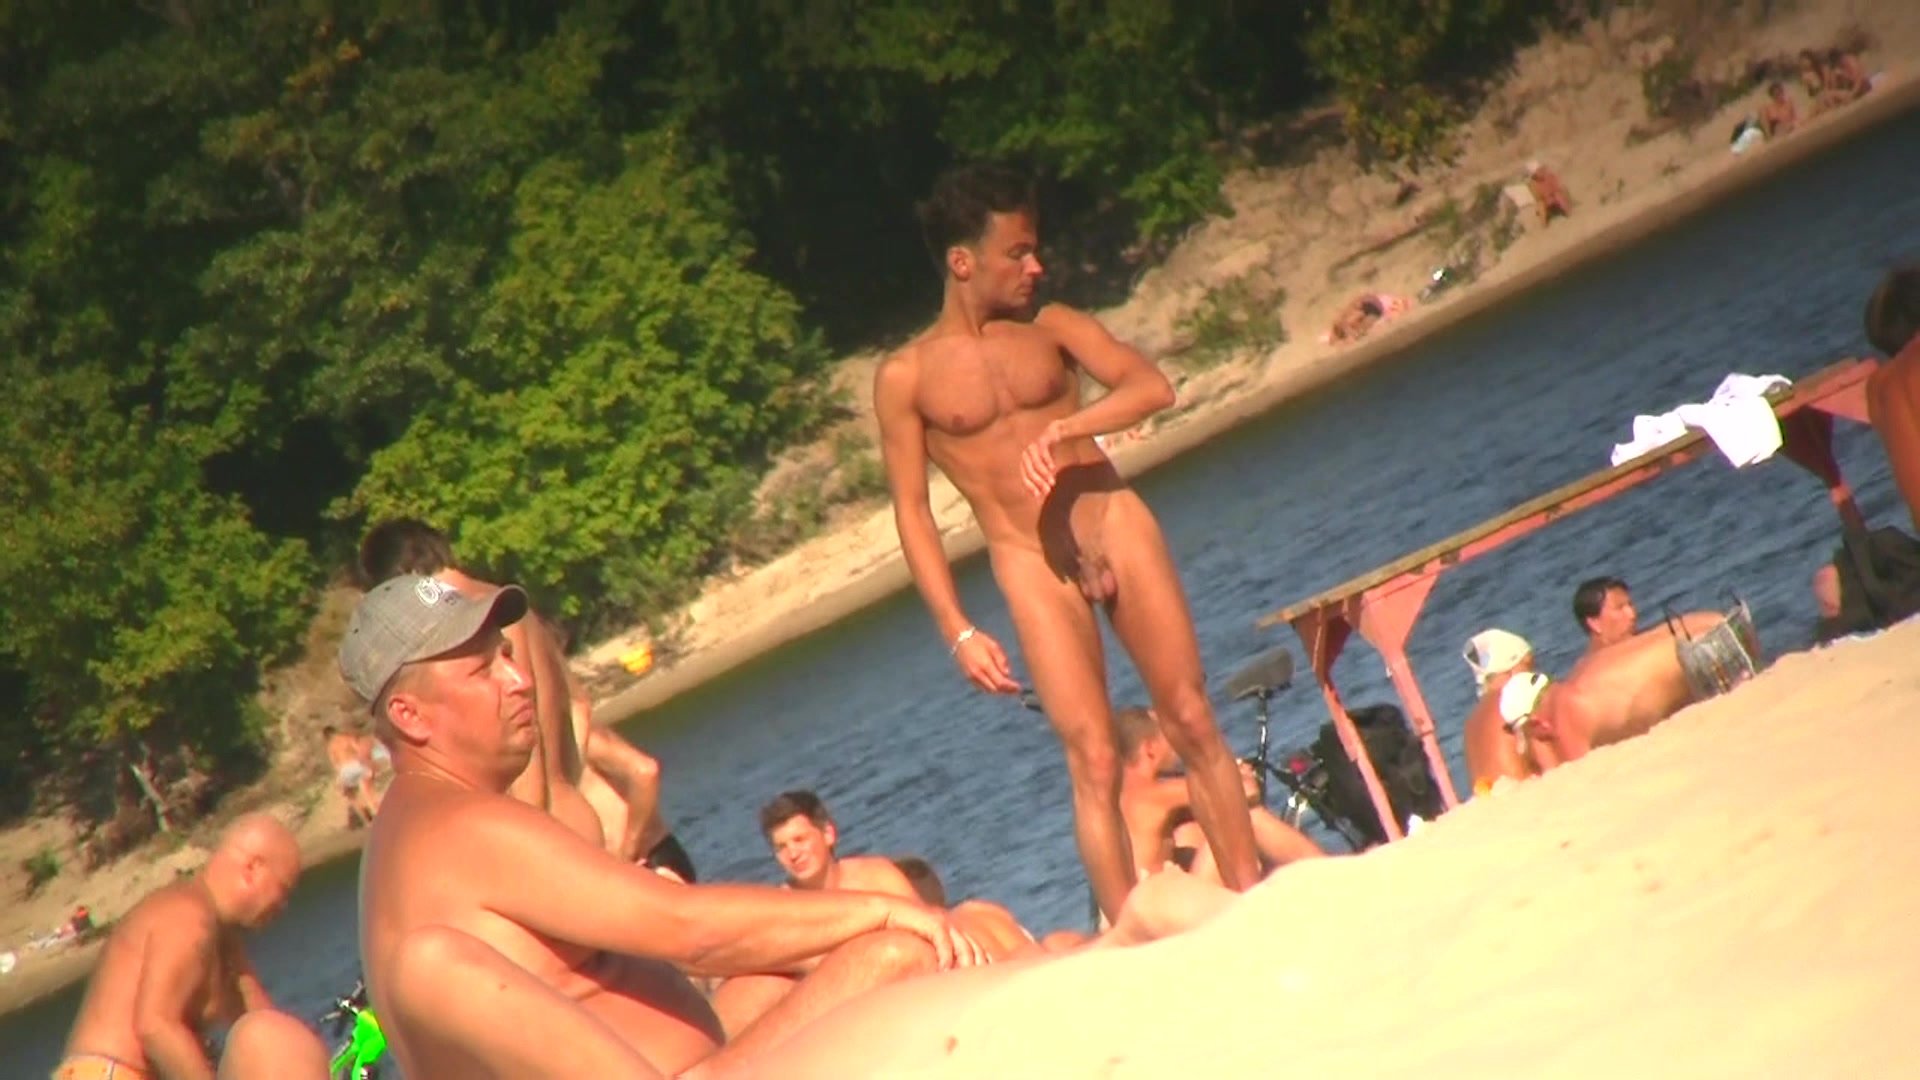 small dick in nudist resort